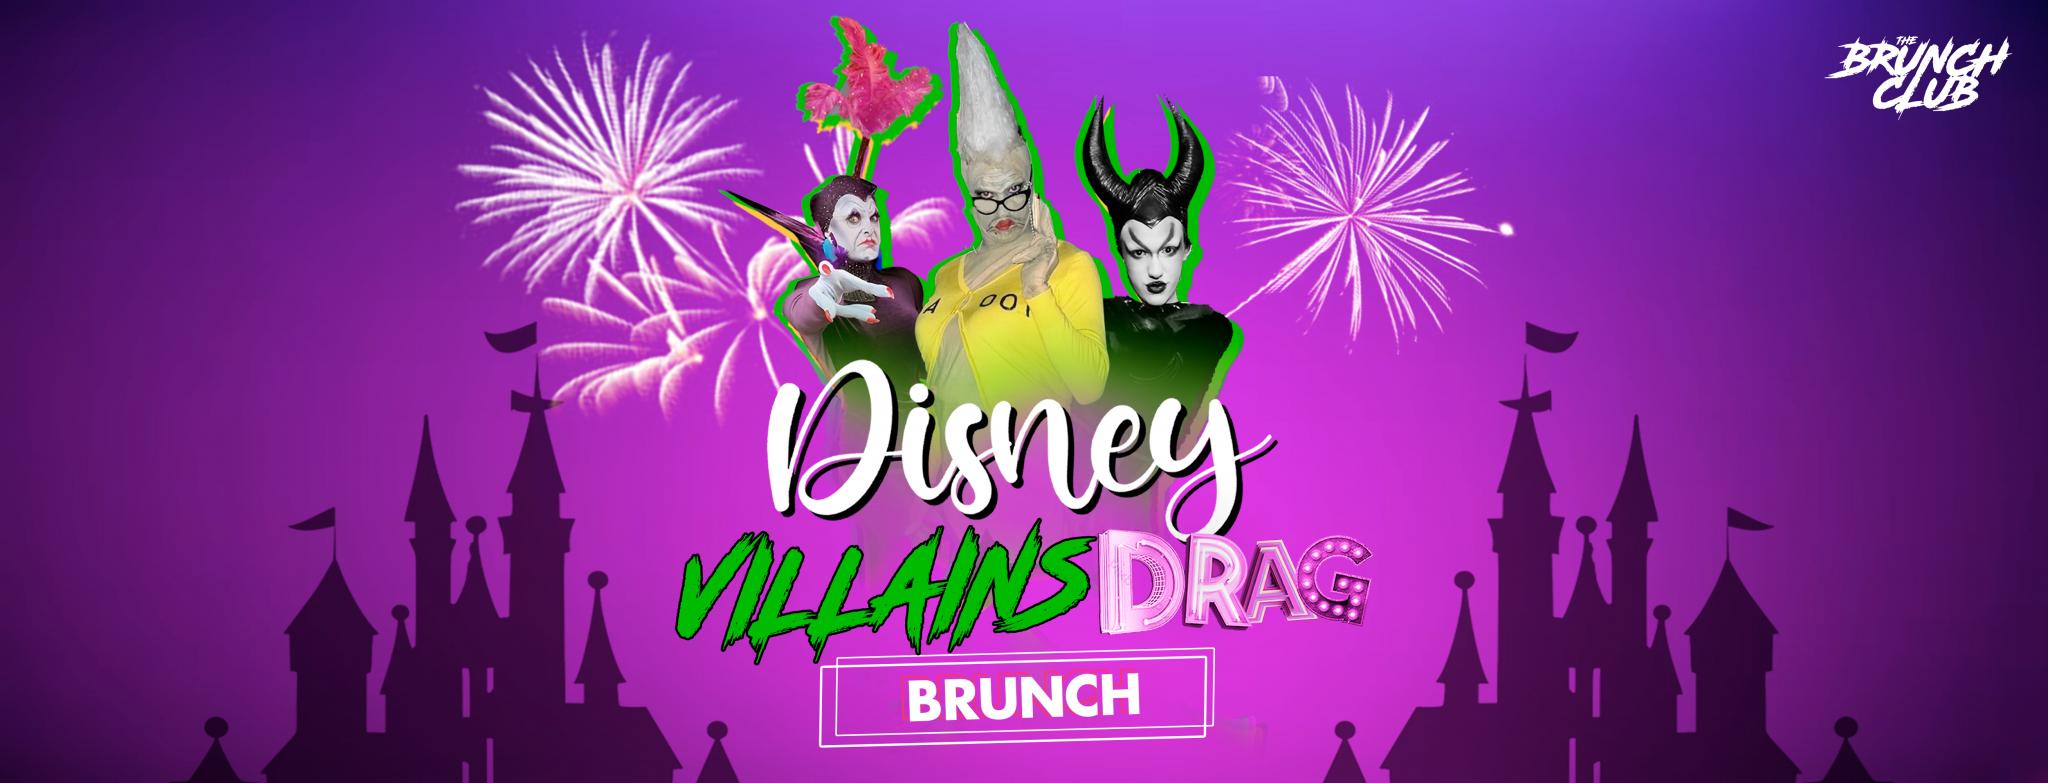 Disney Villains Drag Bottomless Brunch - Nottingham